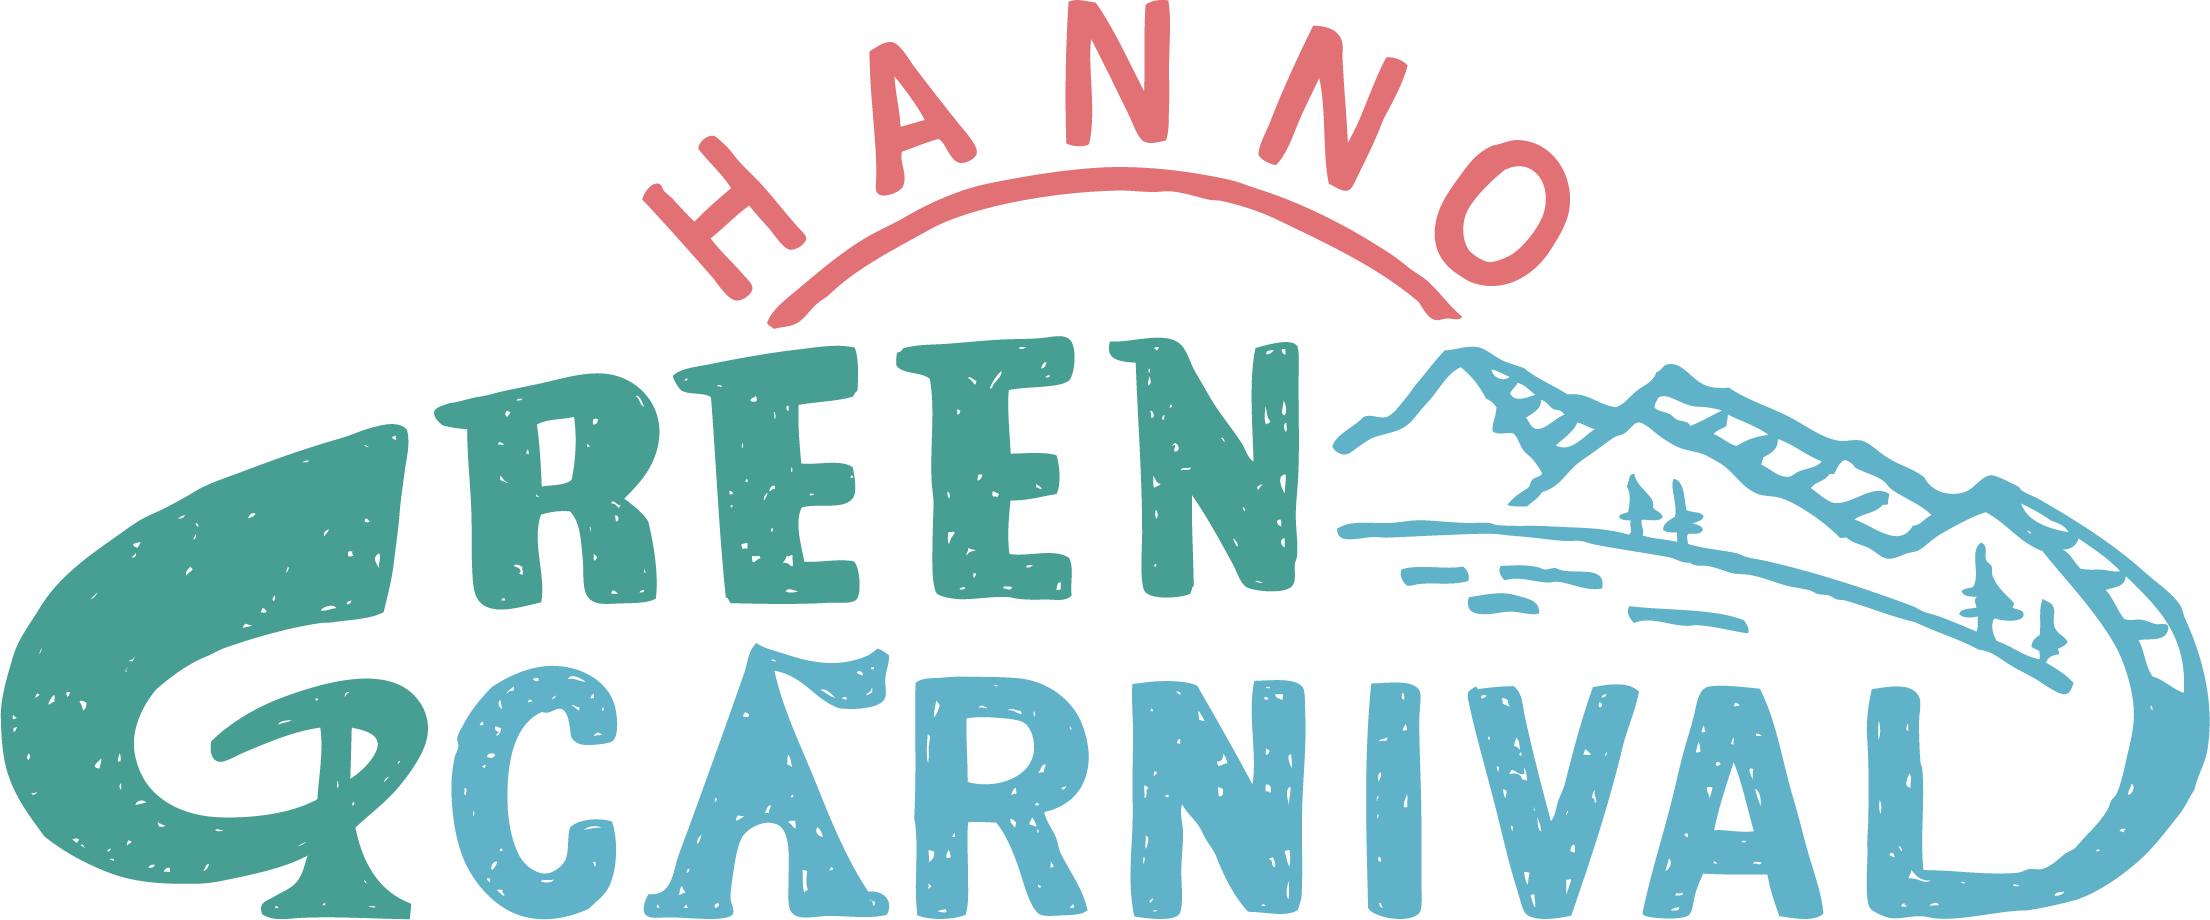 メッツァビレッジで Hanno Green Carnival を開催 株式会社ムーミン物語のプレスリリース